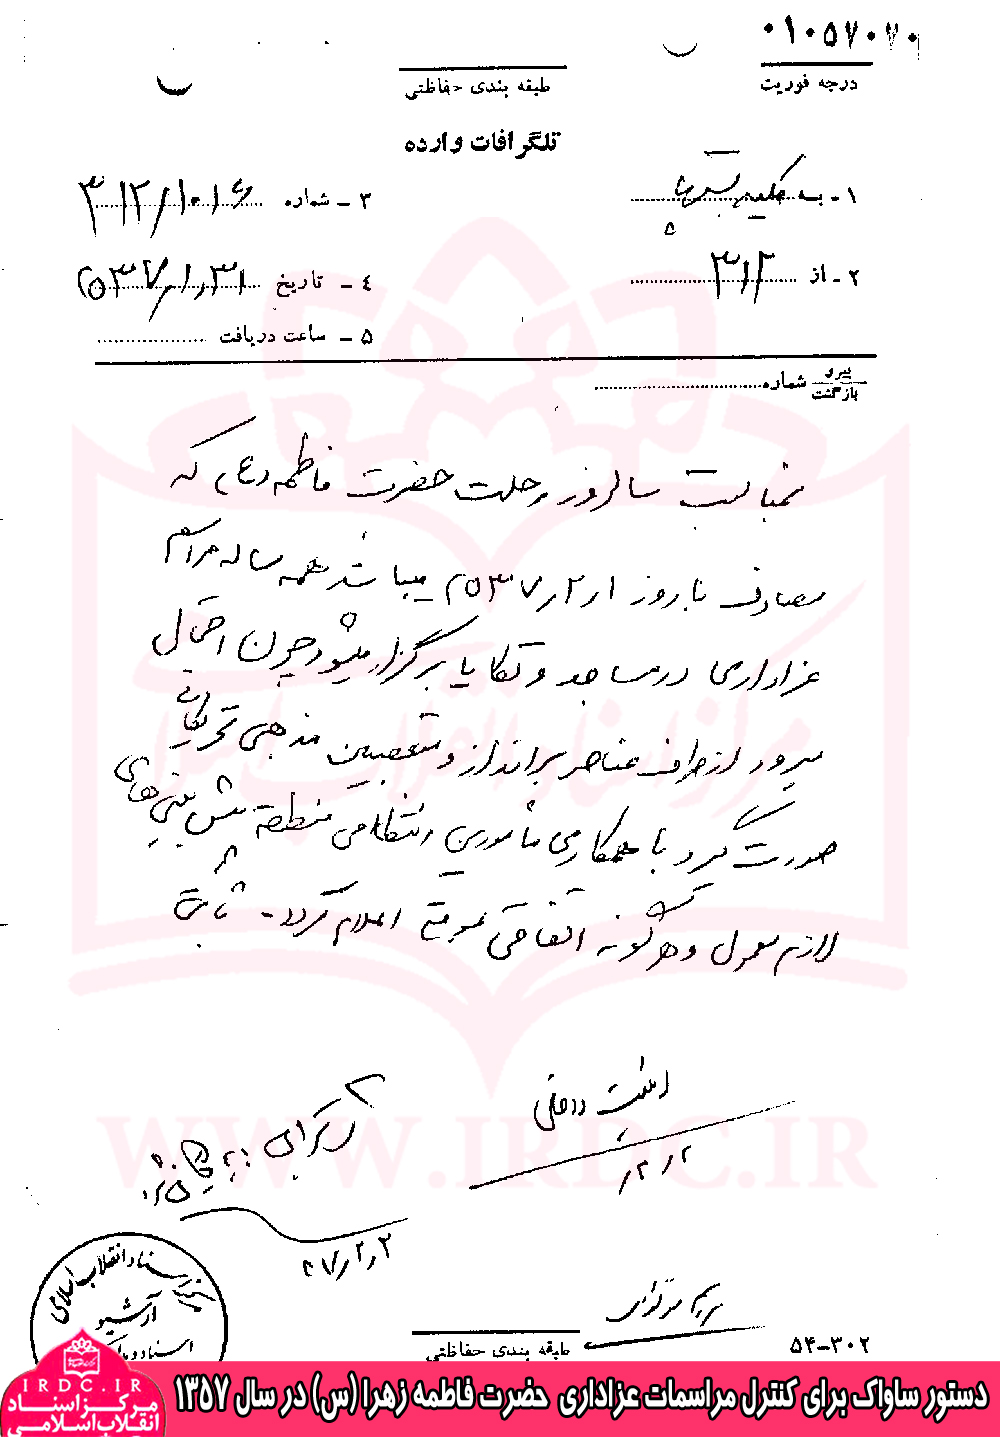 سندی از دستور ساواک برای کنترل مراسمات عزاداری حضرت زهرا(س) در سال 1357